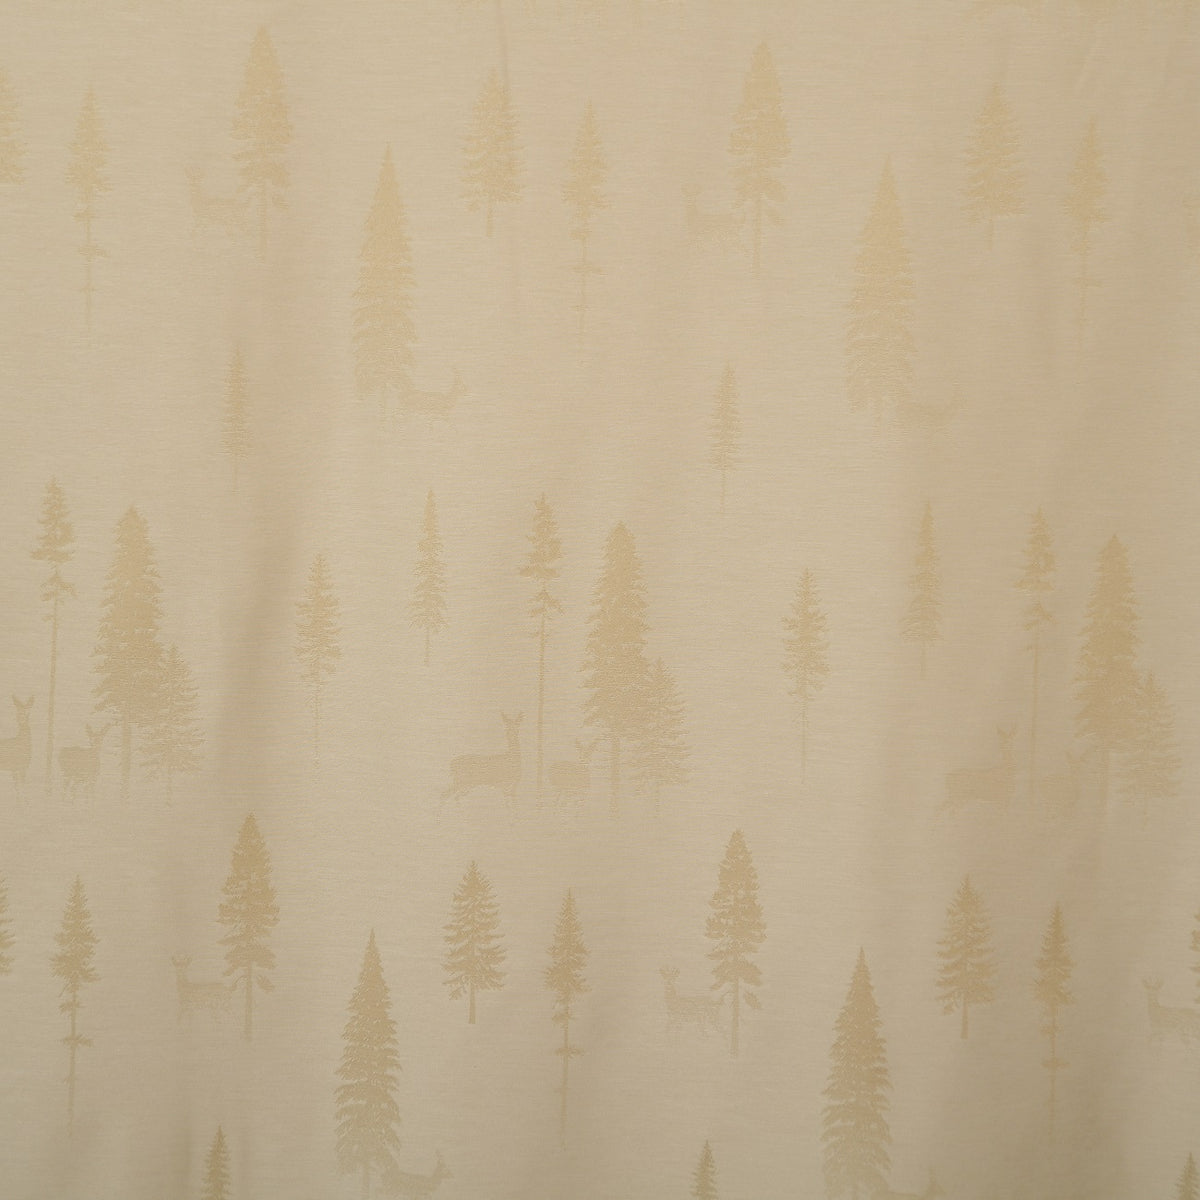 Night curtain light beige Tannalp